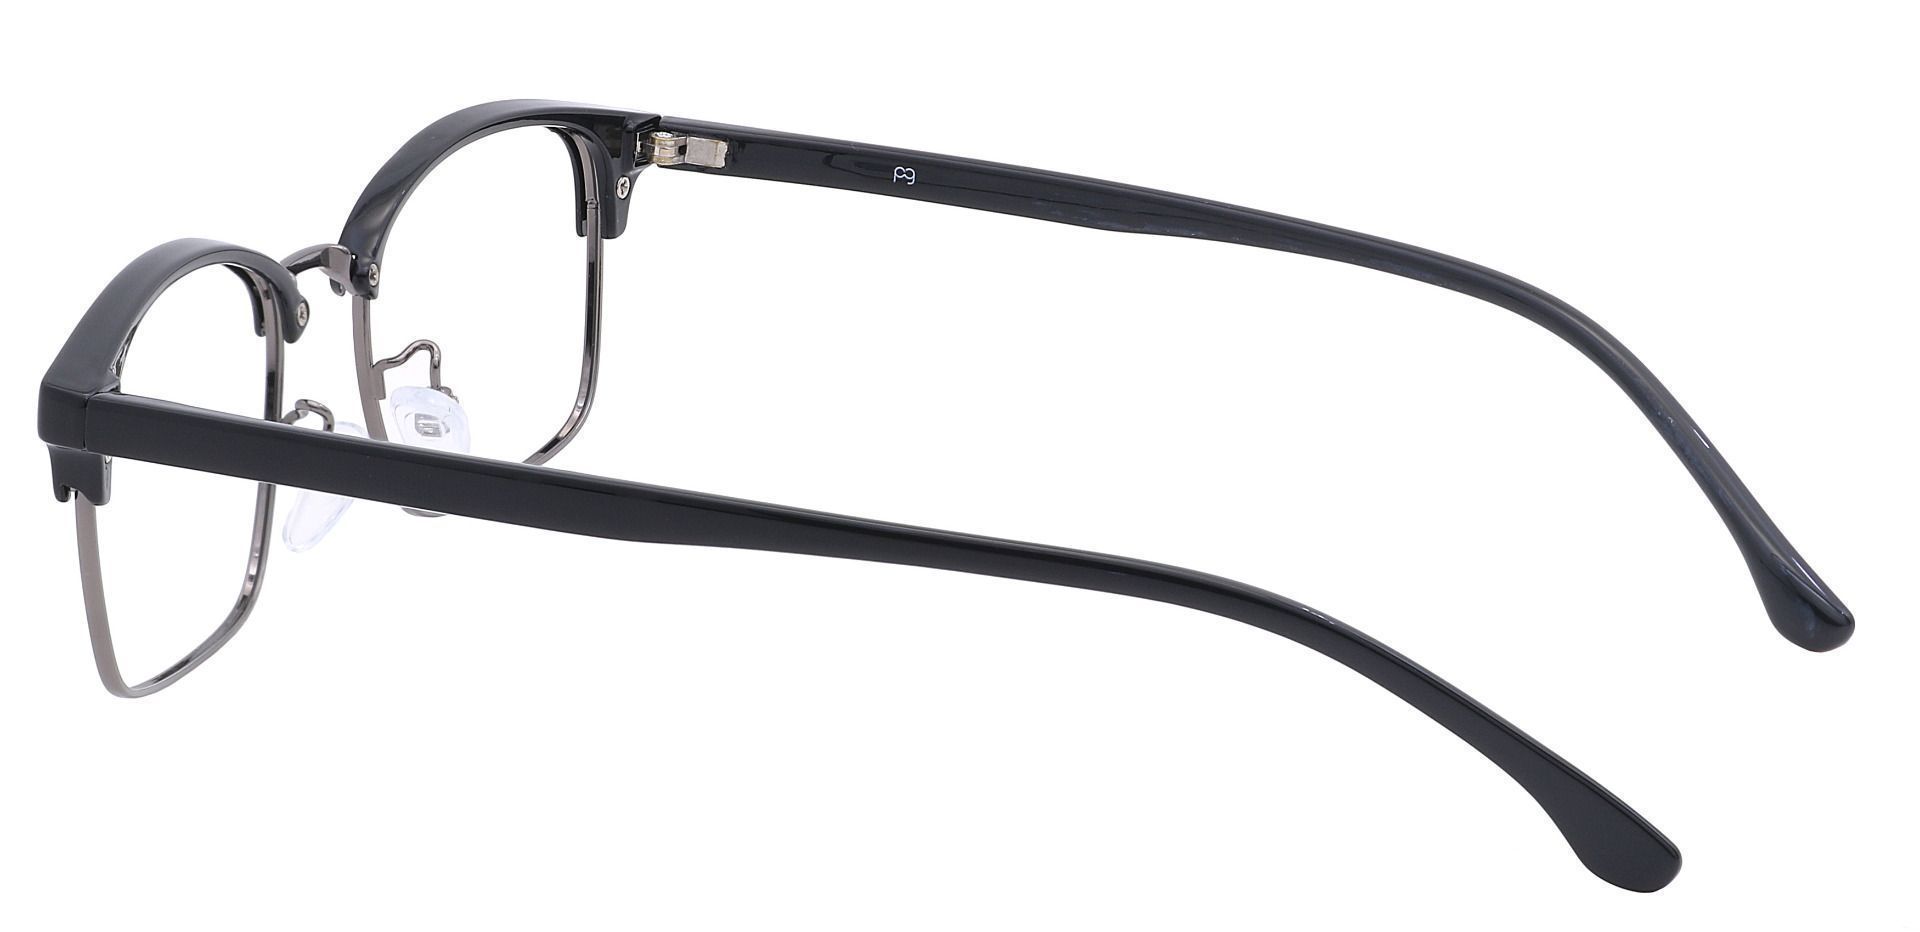 Clover Browline Non-Rx Glasses - Black